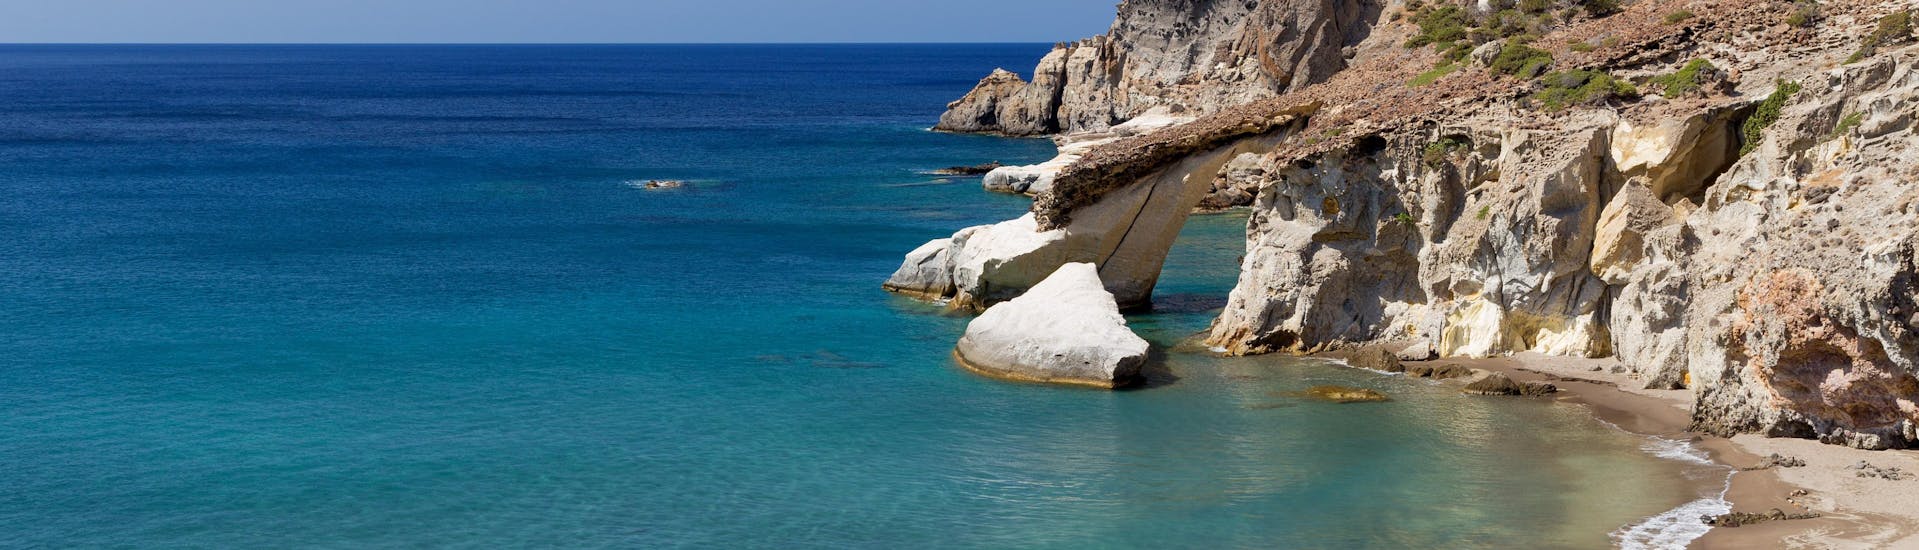 Vue de la belle plage de Gerontas, que vous pouvez découvrir lors d'une balade en bateau autour de l'île de Milos.